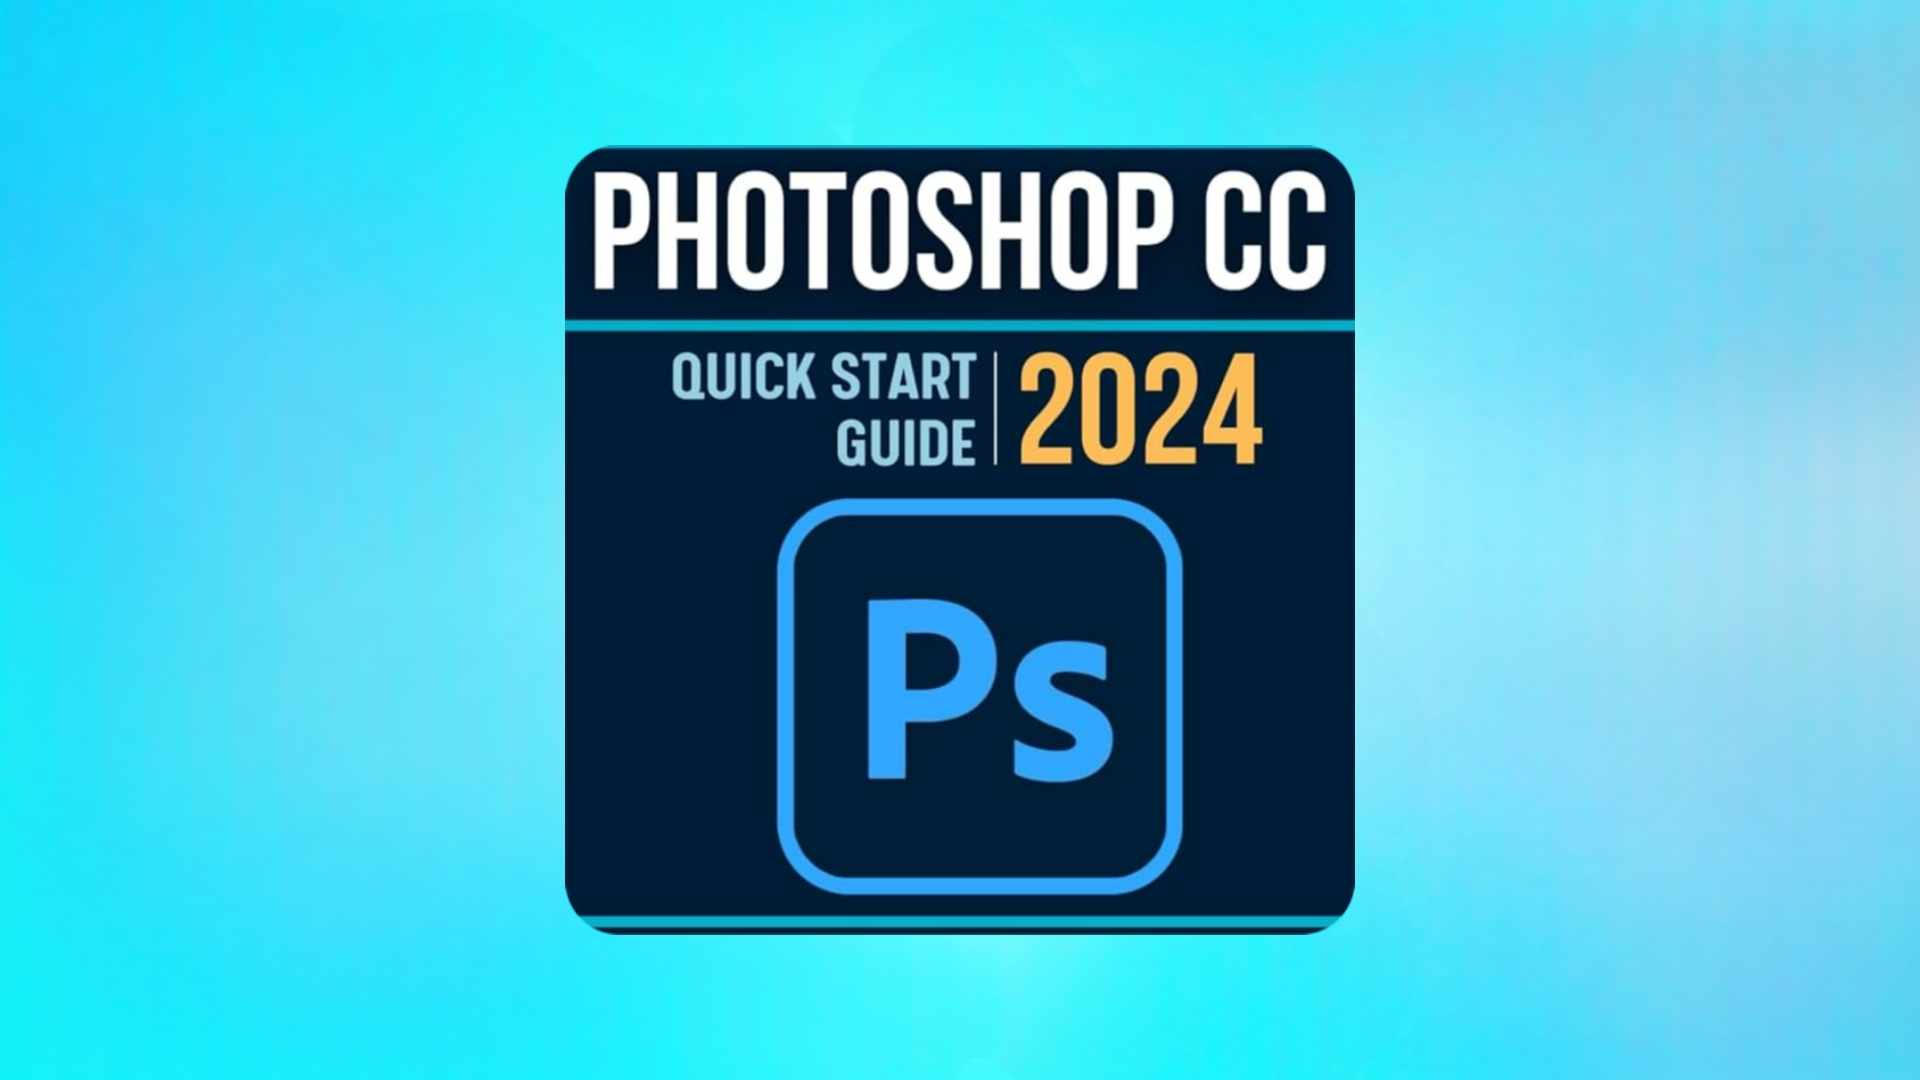 הורד את Photoshop CC 2024 הגרסה האחרונה עם קישור ישיר